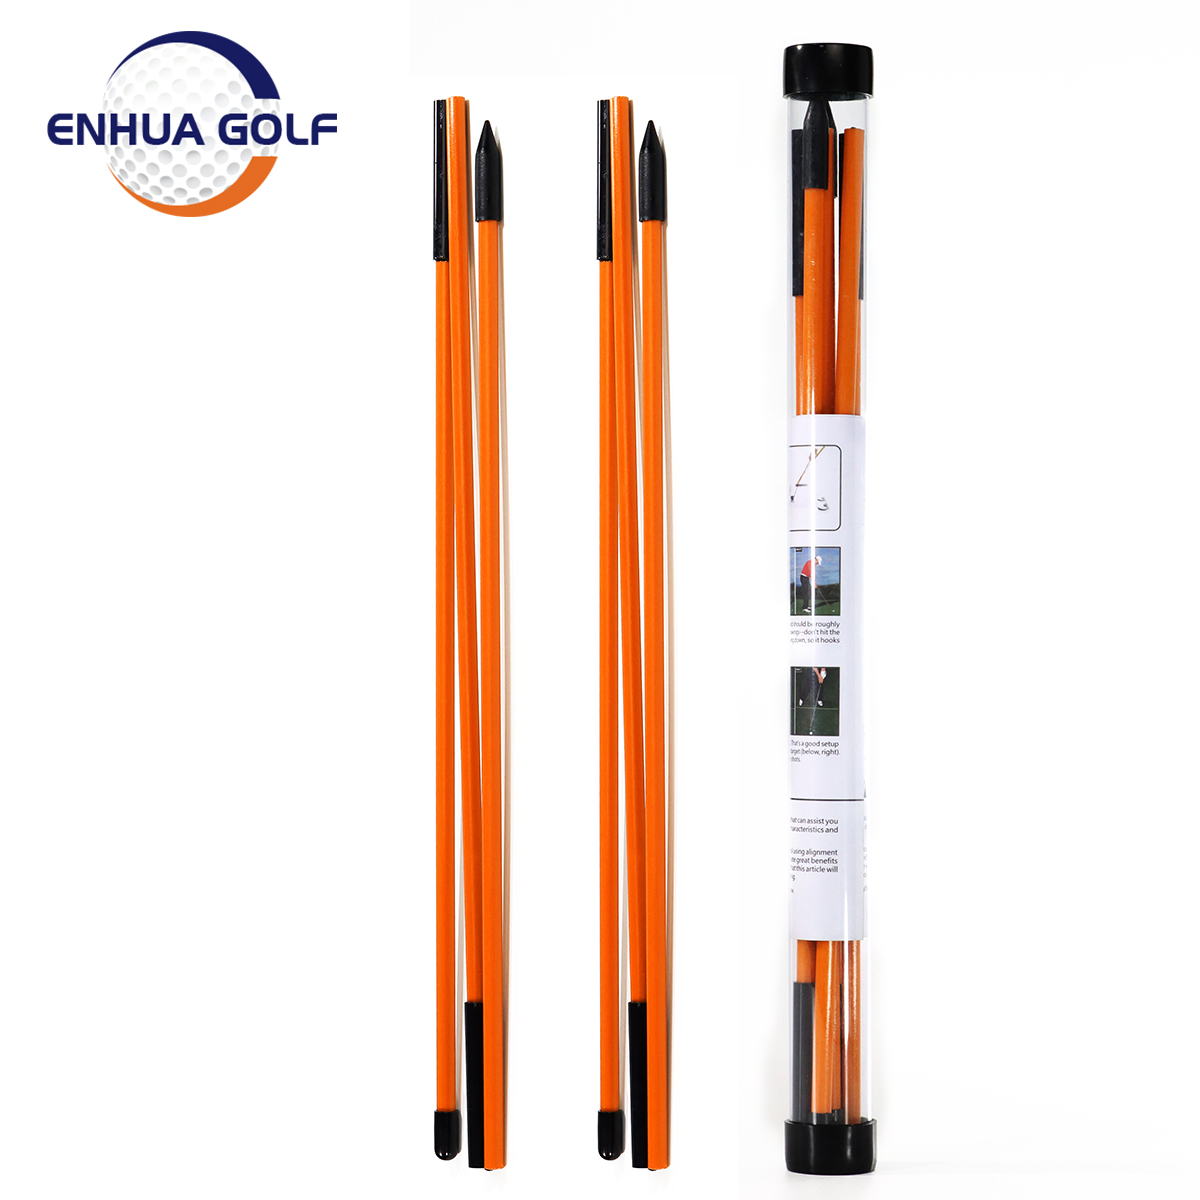 2 पैक फ़ोल्ड करने योग्य गोल्फ प्रैक्टिस स्टिक क्लियर गोल्फ प्रैक्टिस बॉल्स गोल्फ स्विंग ट्रेनर फीचर्ड इमेज के साथ